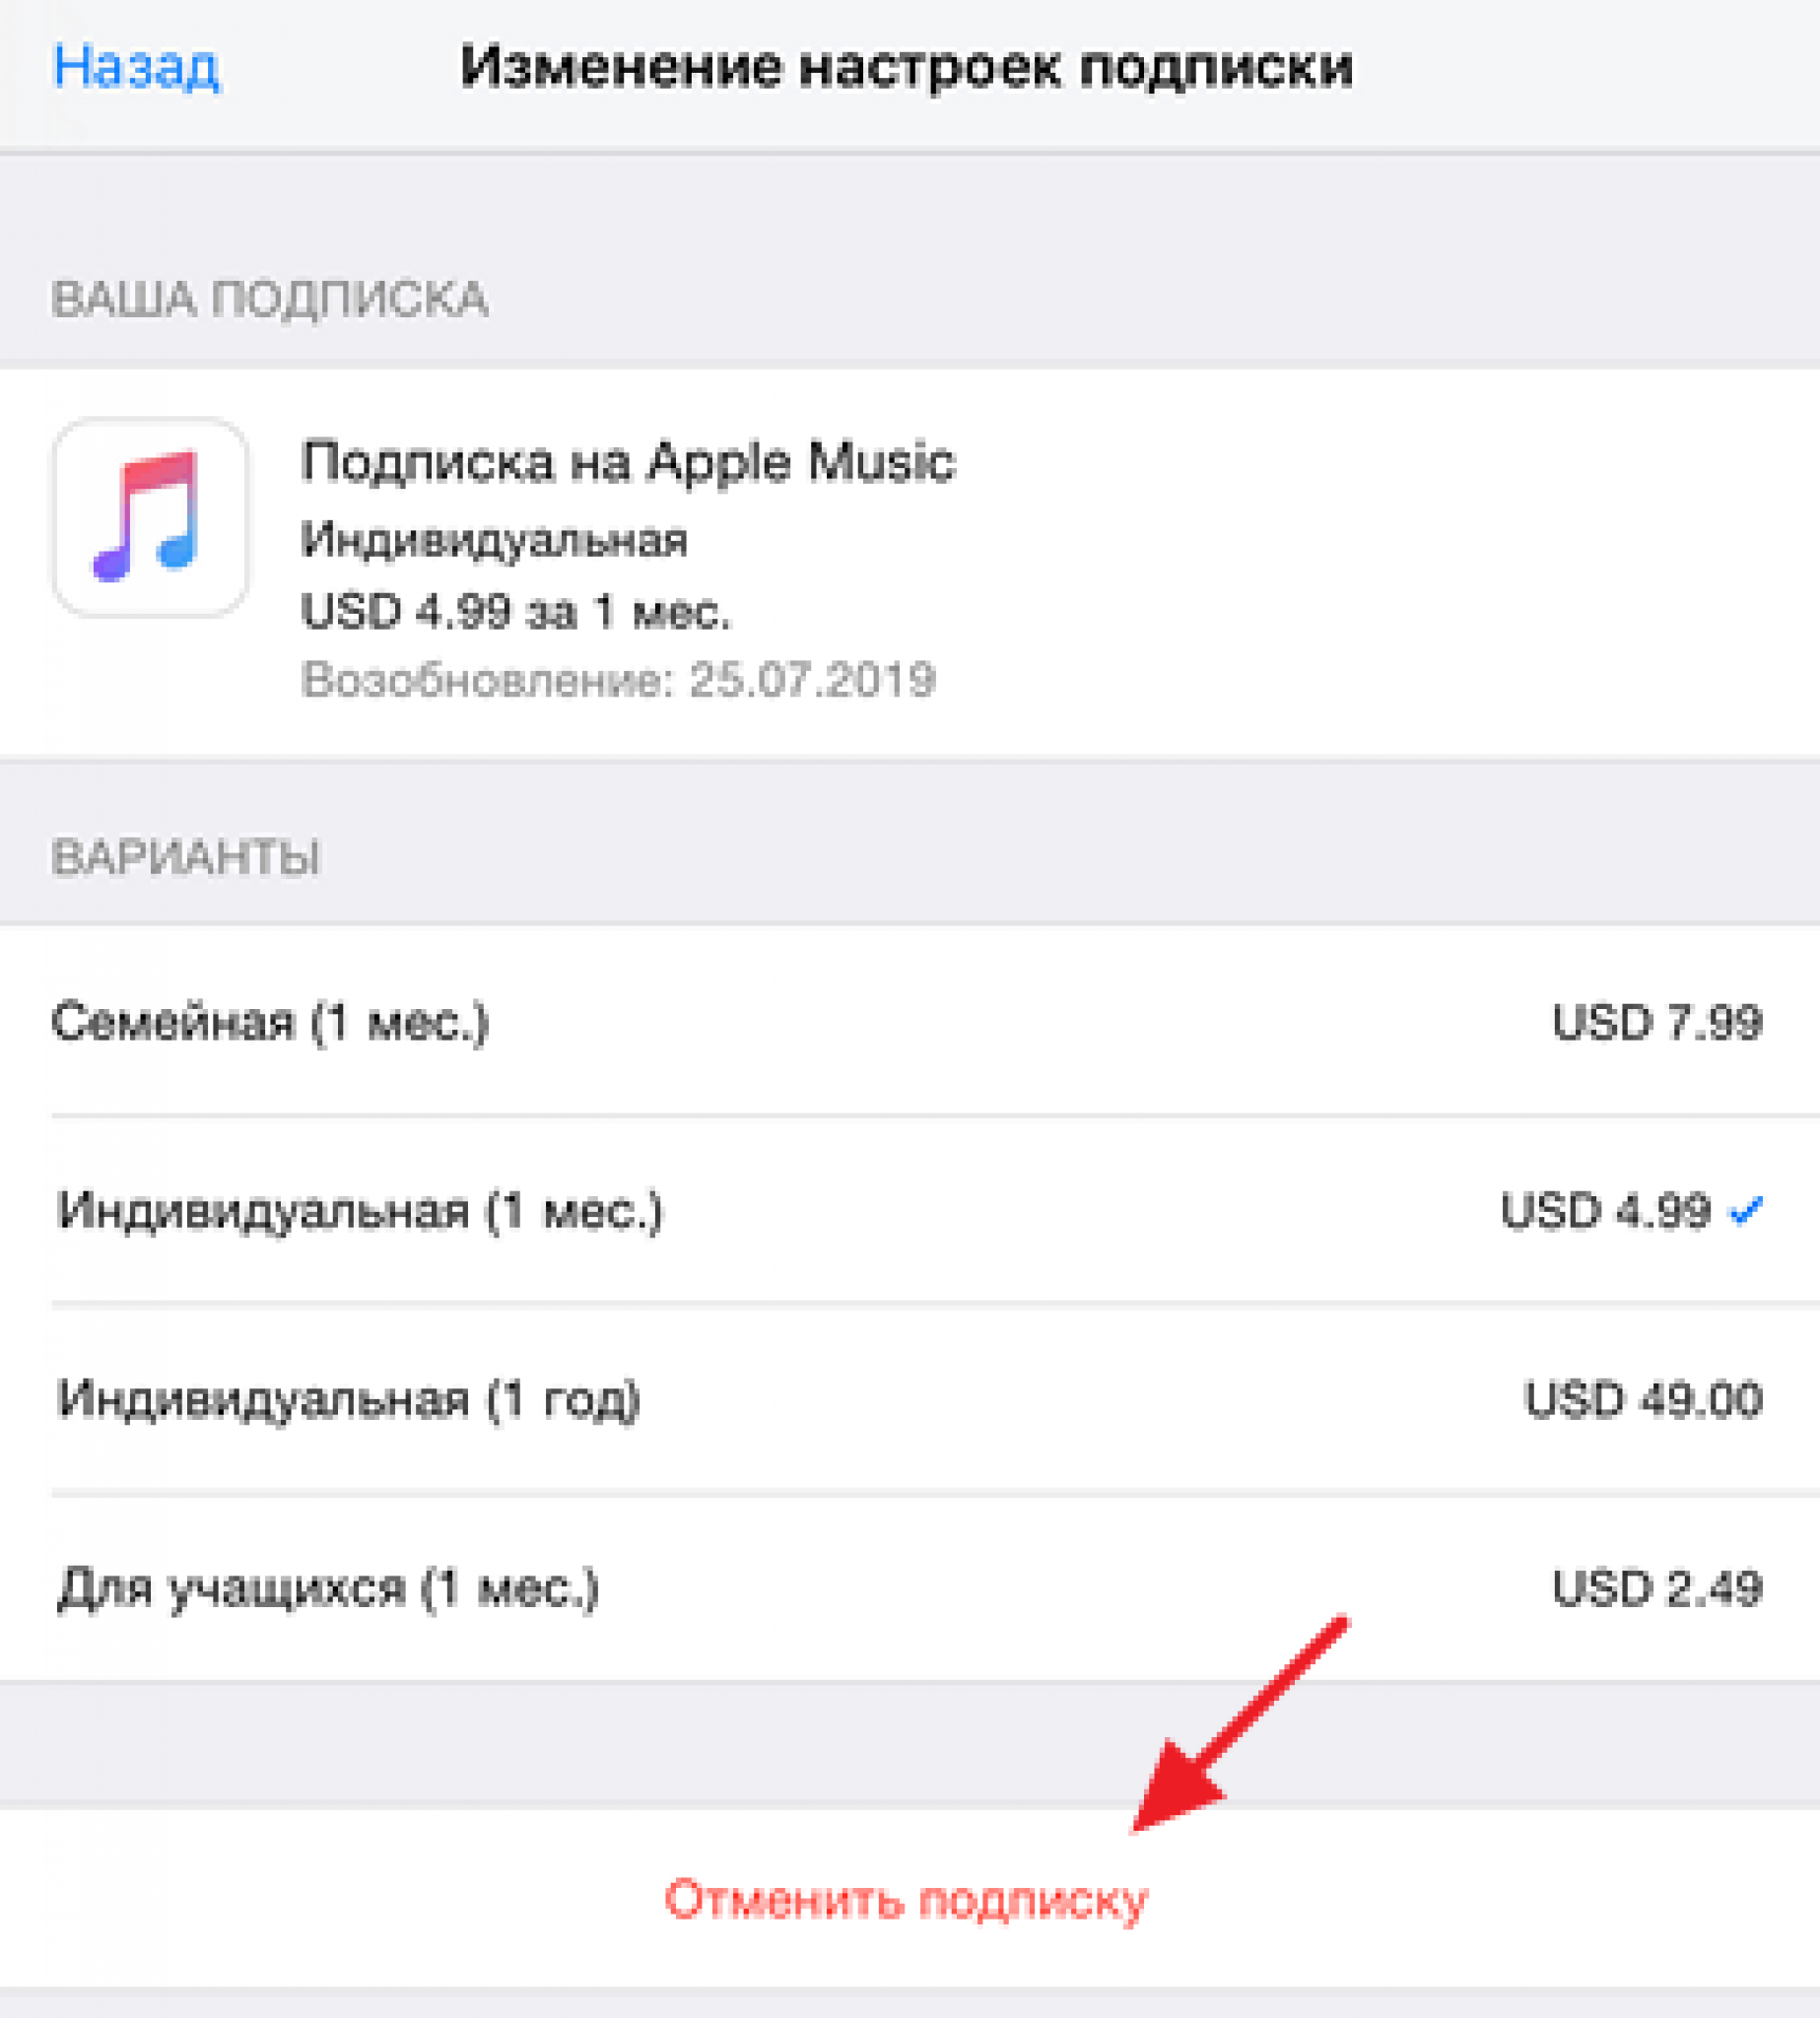 Как отключить подписку на музыку в айфоне - инструкция тарифкин.ру
как отключить подписку на музыку в айфоне - инструкция